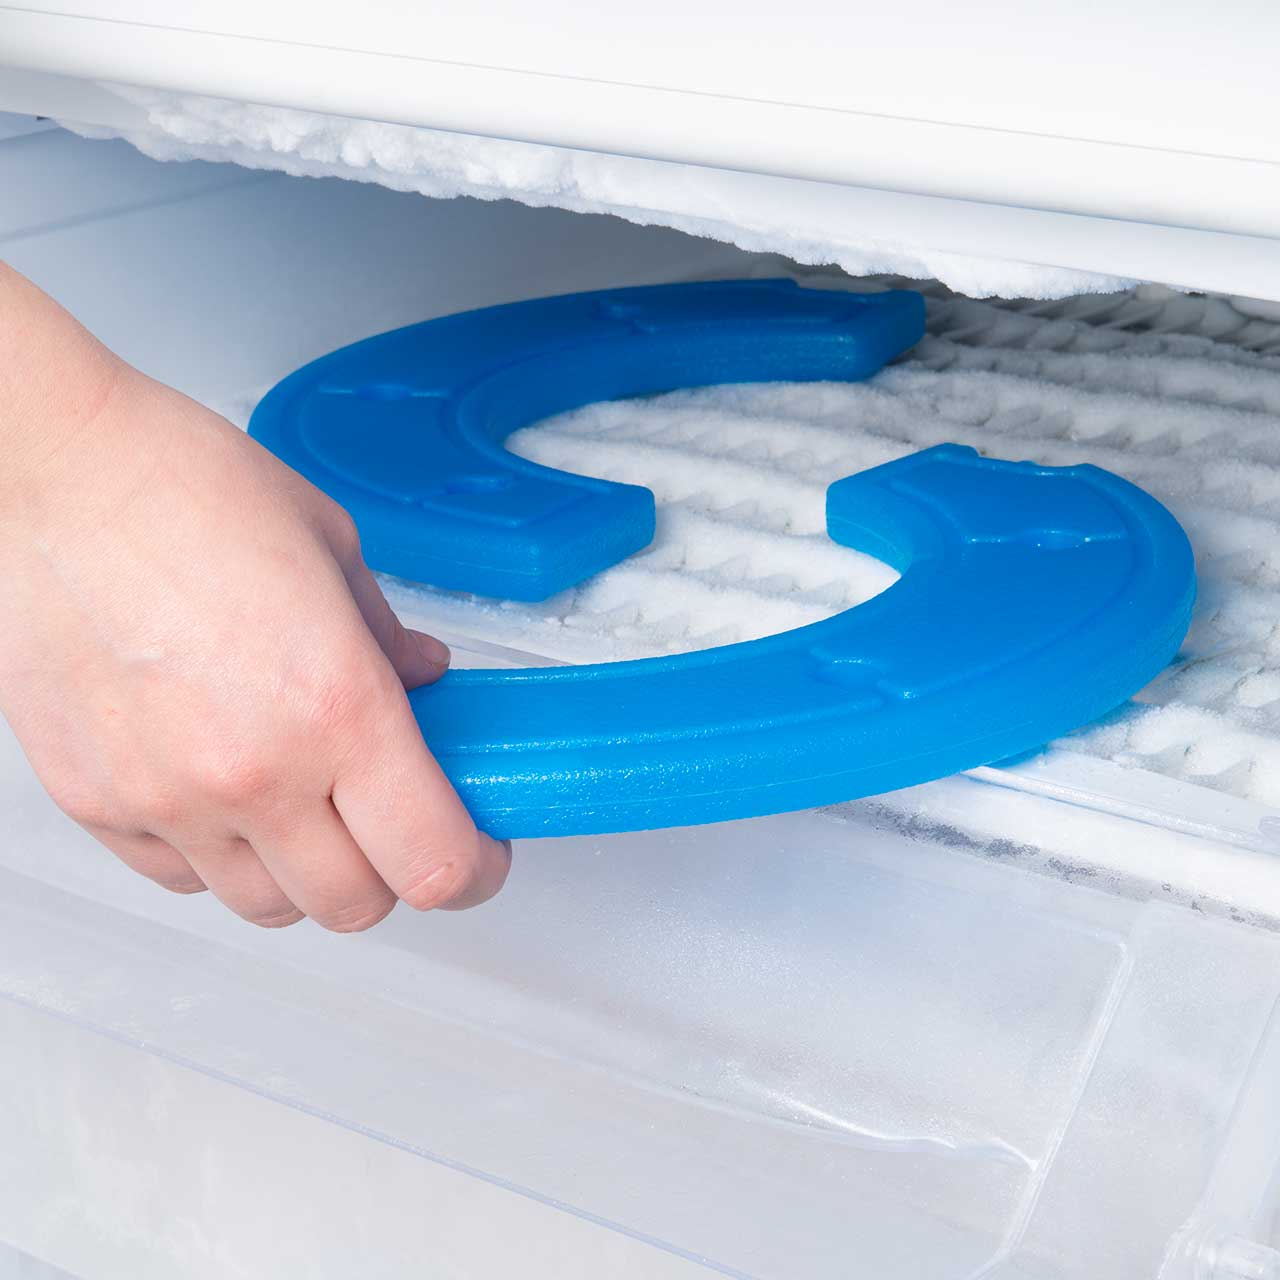 PIXI Ice packs in freezer